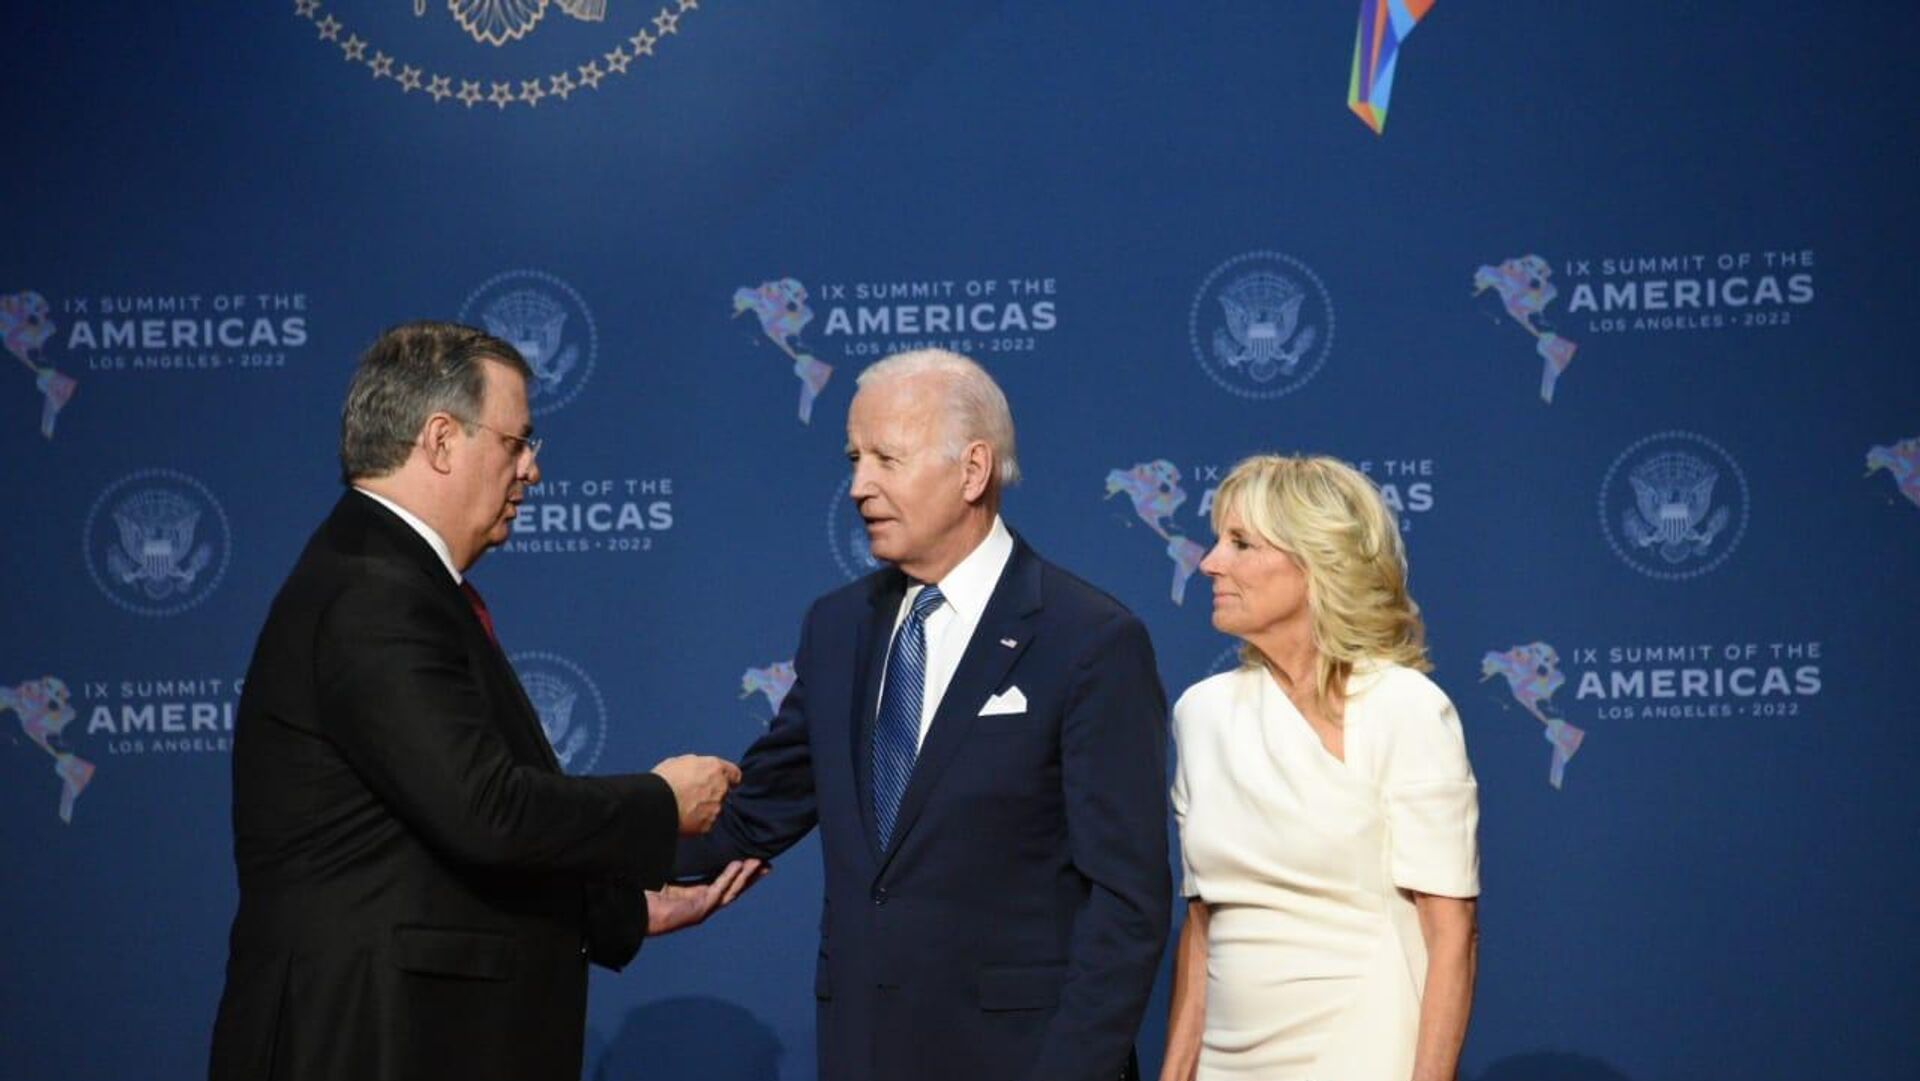 El canciller mexicano, Marcelo Ebrard, saluda a Joe y Jill Biden durante la IX Cumbre de las Américas - Sputnik Mundo, 1920, 09.06.2022